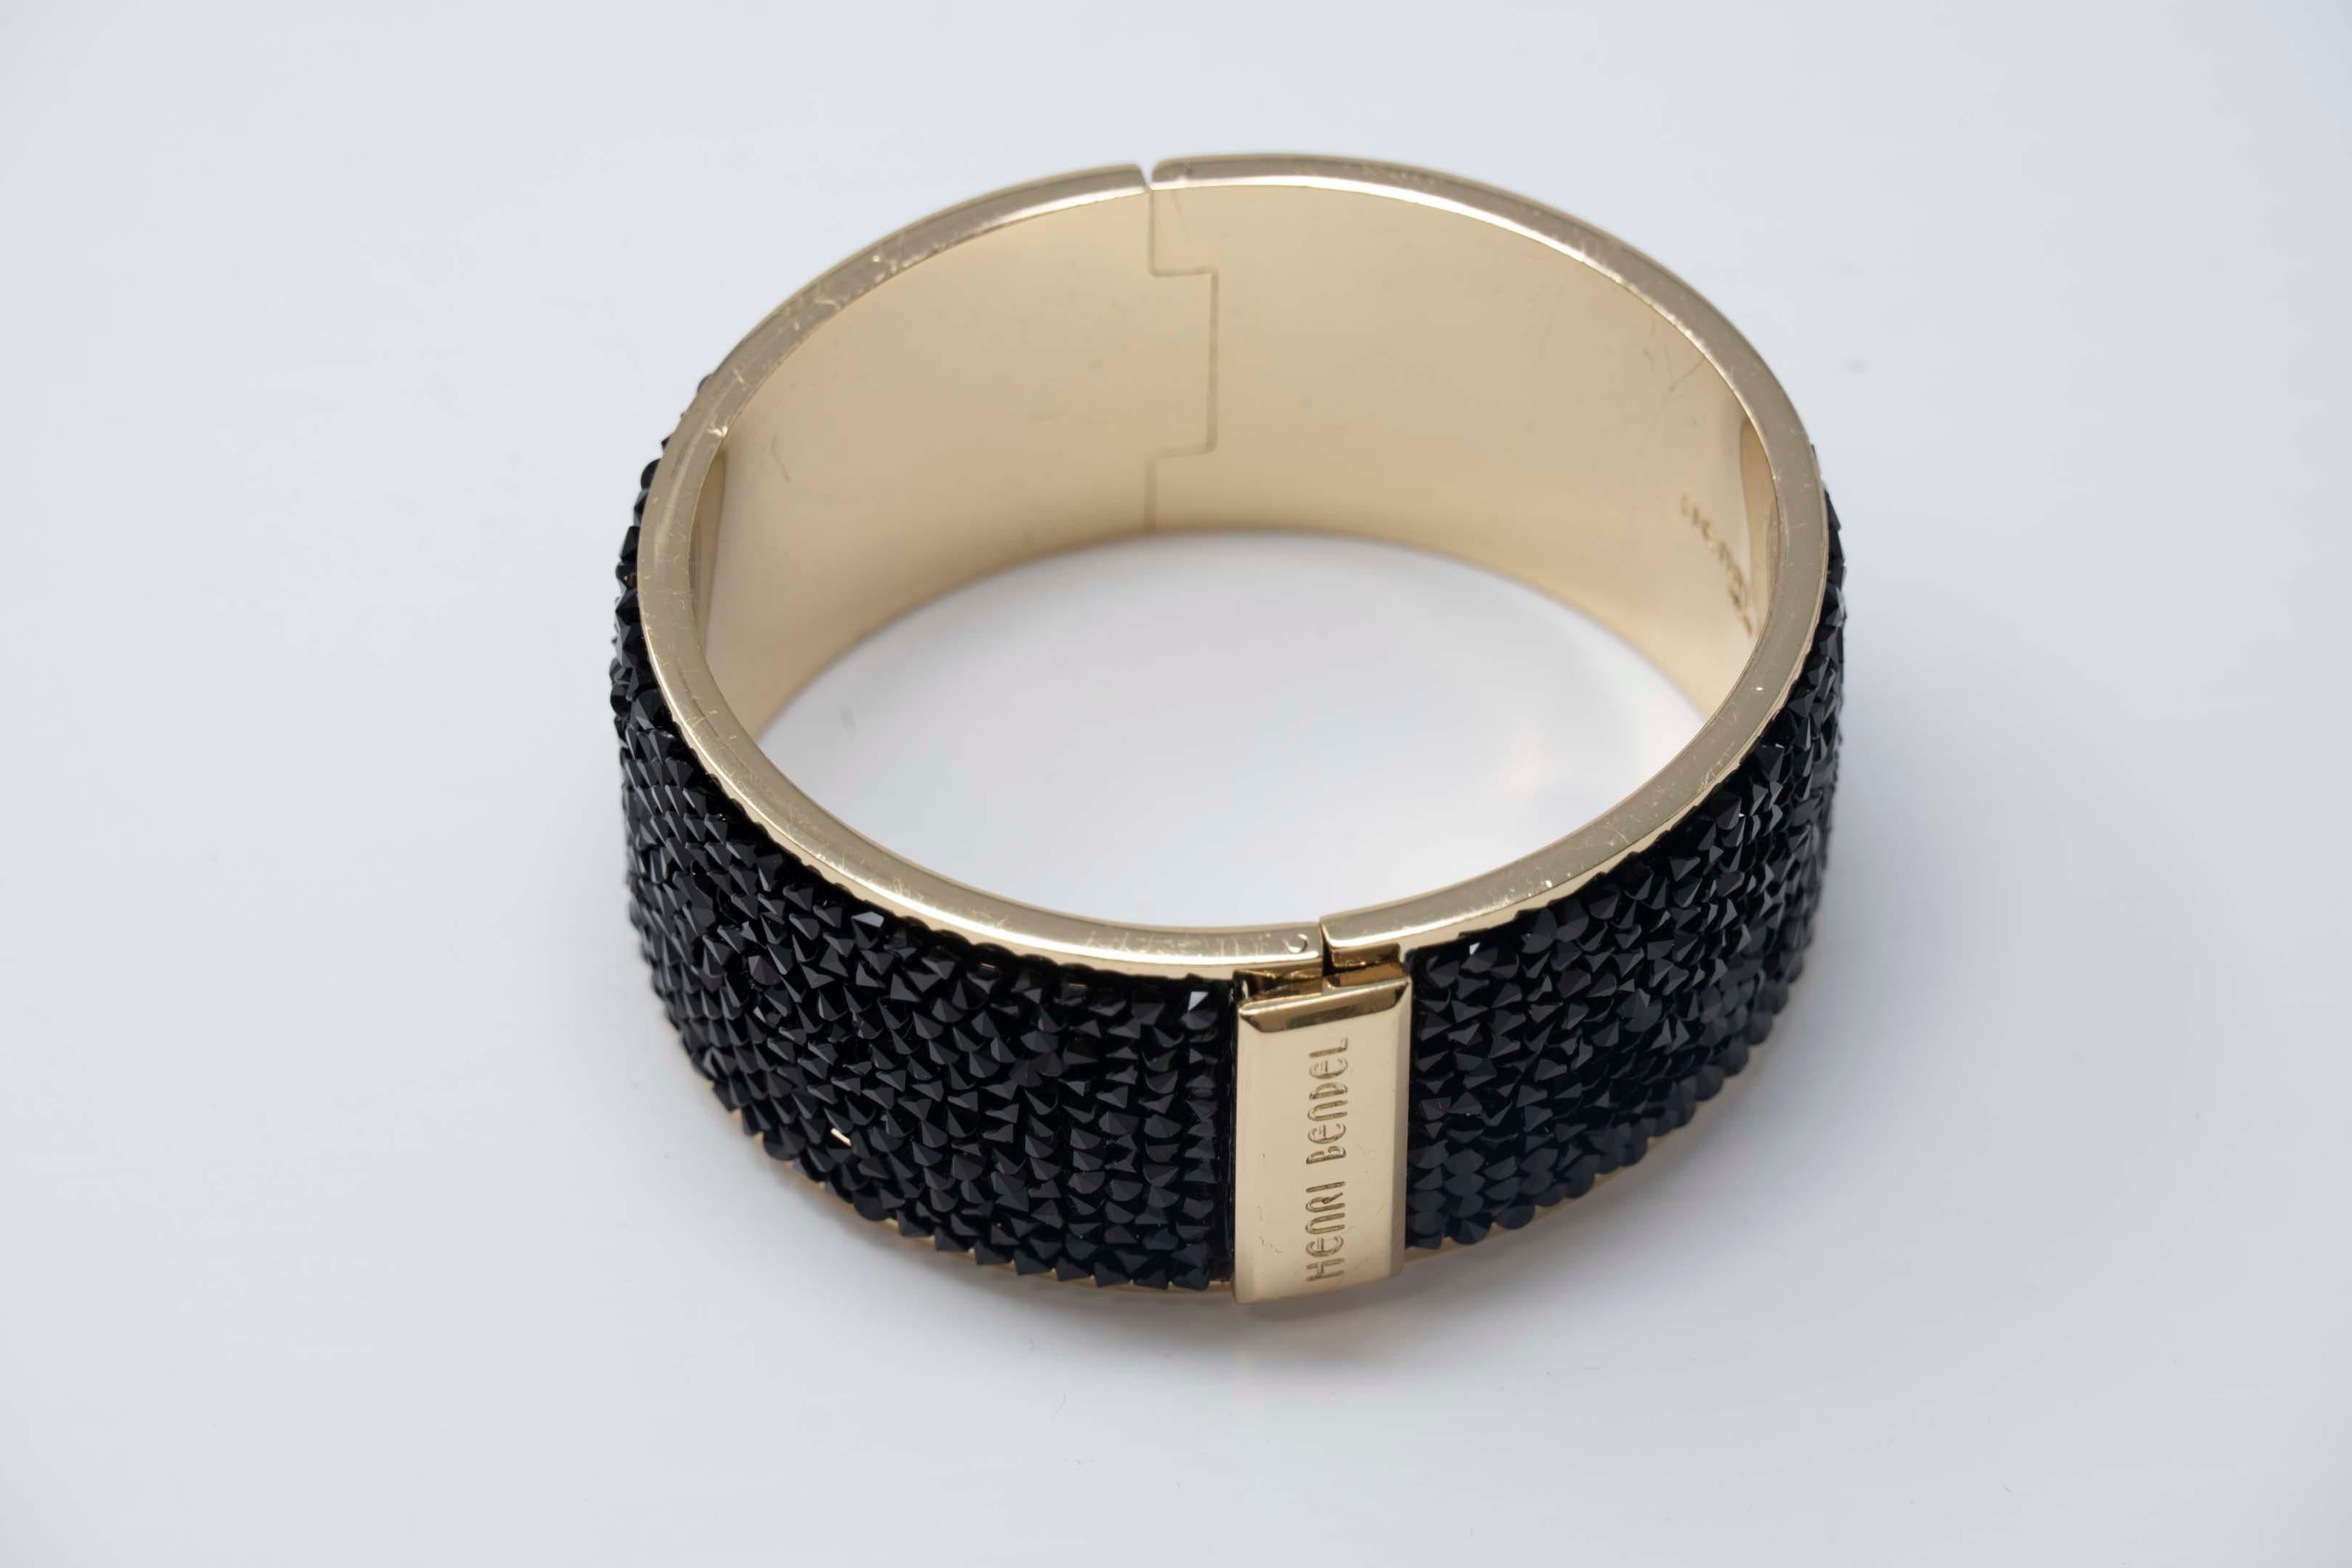 Henri Bendel NY bracelet en or avec pavé de cristal. Le bracelet mesure 2 1/2 pouces de diamètre au point le plus large et 1 1/2 pouces de largeur. L'article est estampillé à l'intérieur et en excellent état.
